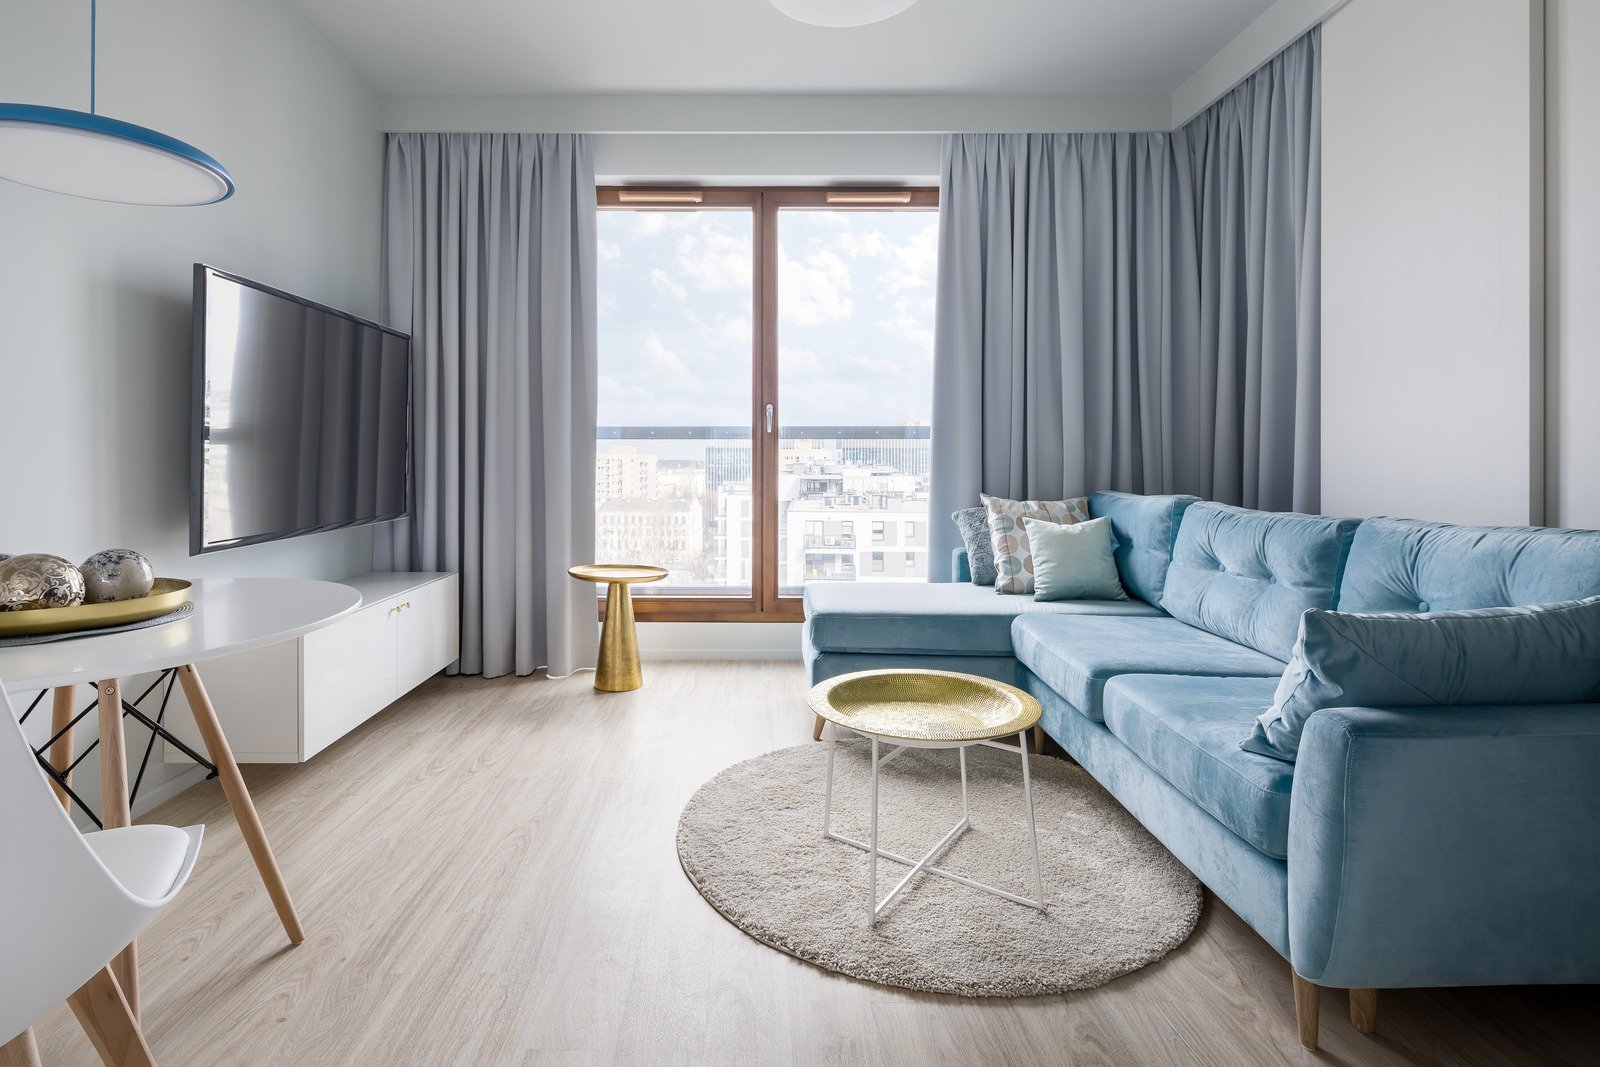 minimalistyczne mieszkanie urządzone w ciepłych barwach, błękitna sofa, białe meble